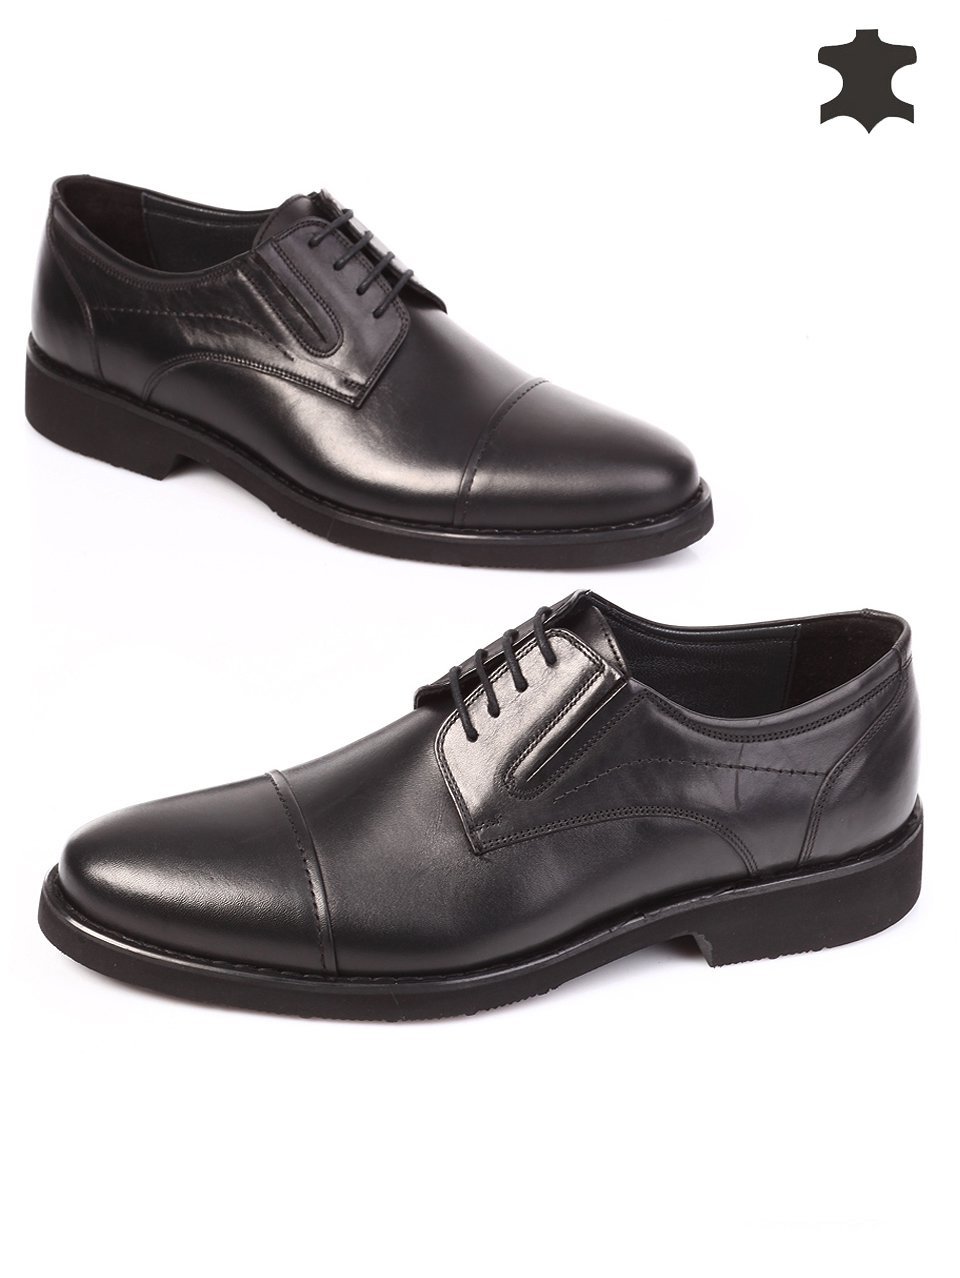 Елегантни мъжки обувки от естествена кожа 7AT-15830 black